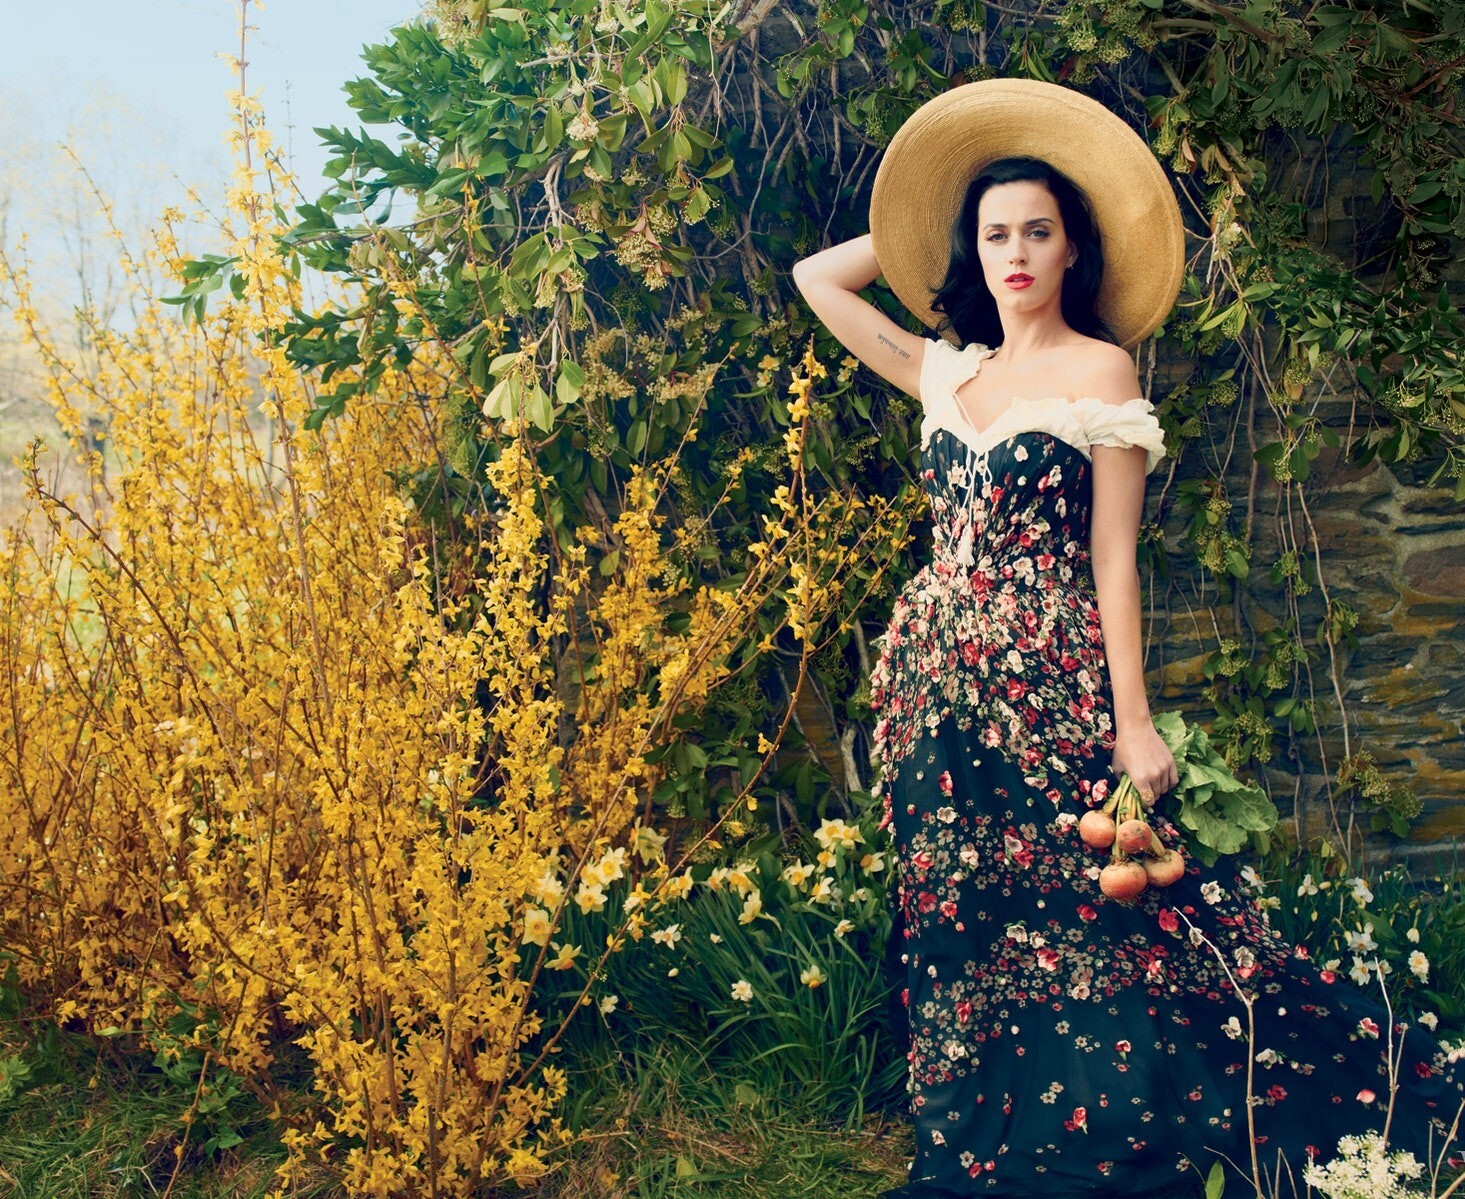 Кэти Перри, Vogue, 2013. Фотограф Энни Лейбовиц